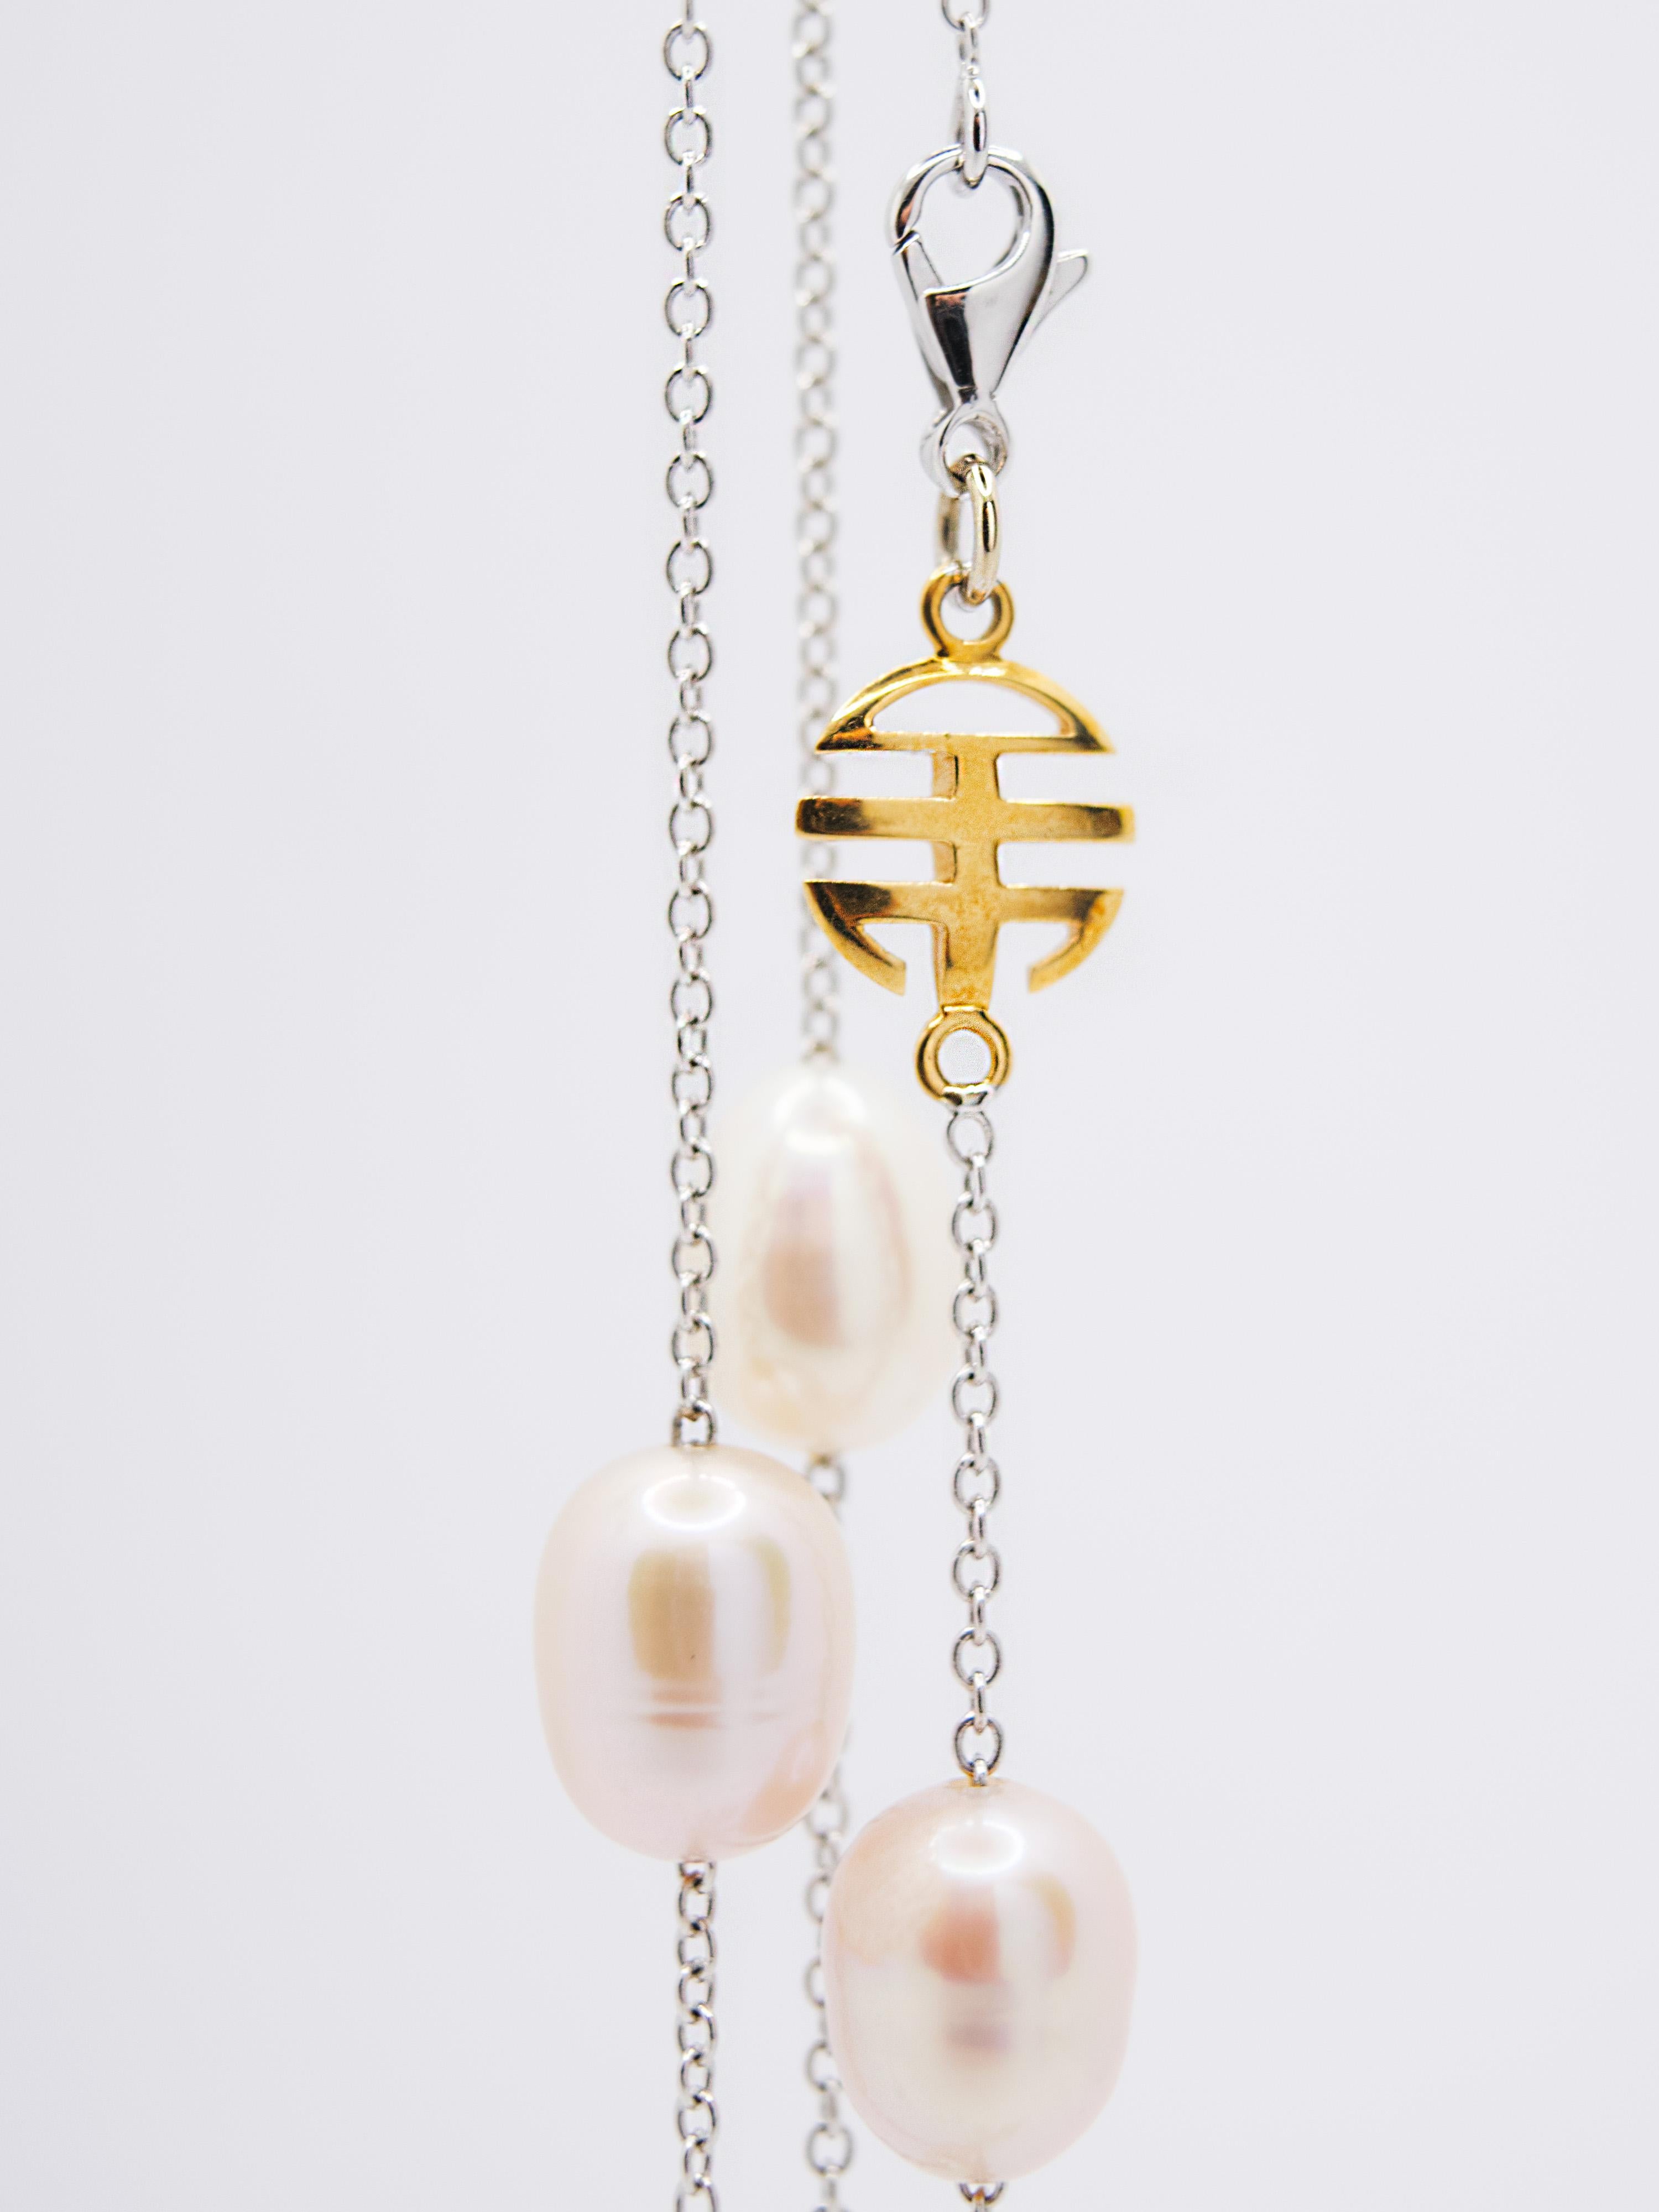 Magnifique collier d'une longueur de 1,80 cm composé d'une chaîne rollo en or blanc 18 Kt avec le symbole du fabricant ( MIMì ) en or rose 18 Kt.
Son poids total est de 40,50 g
La chaîne est parsemée de perles rondes et ovales de différentes